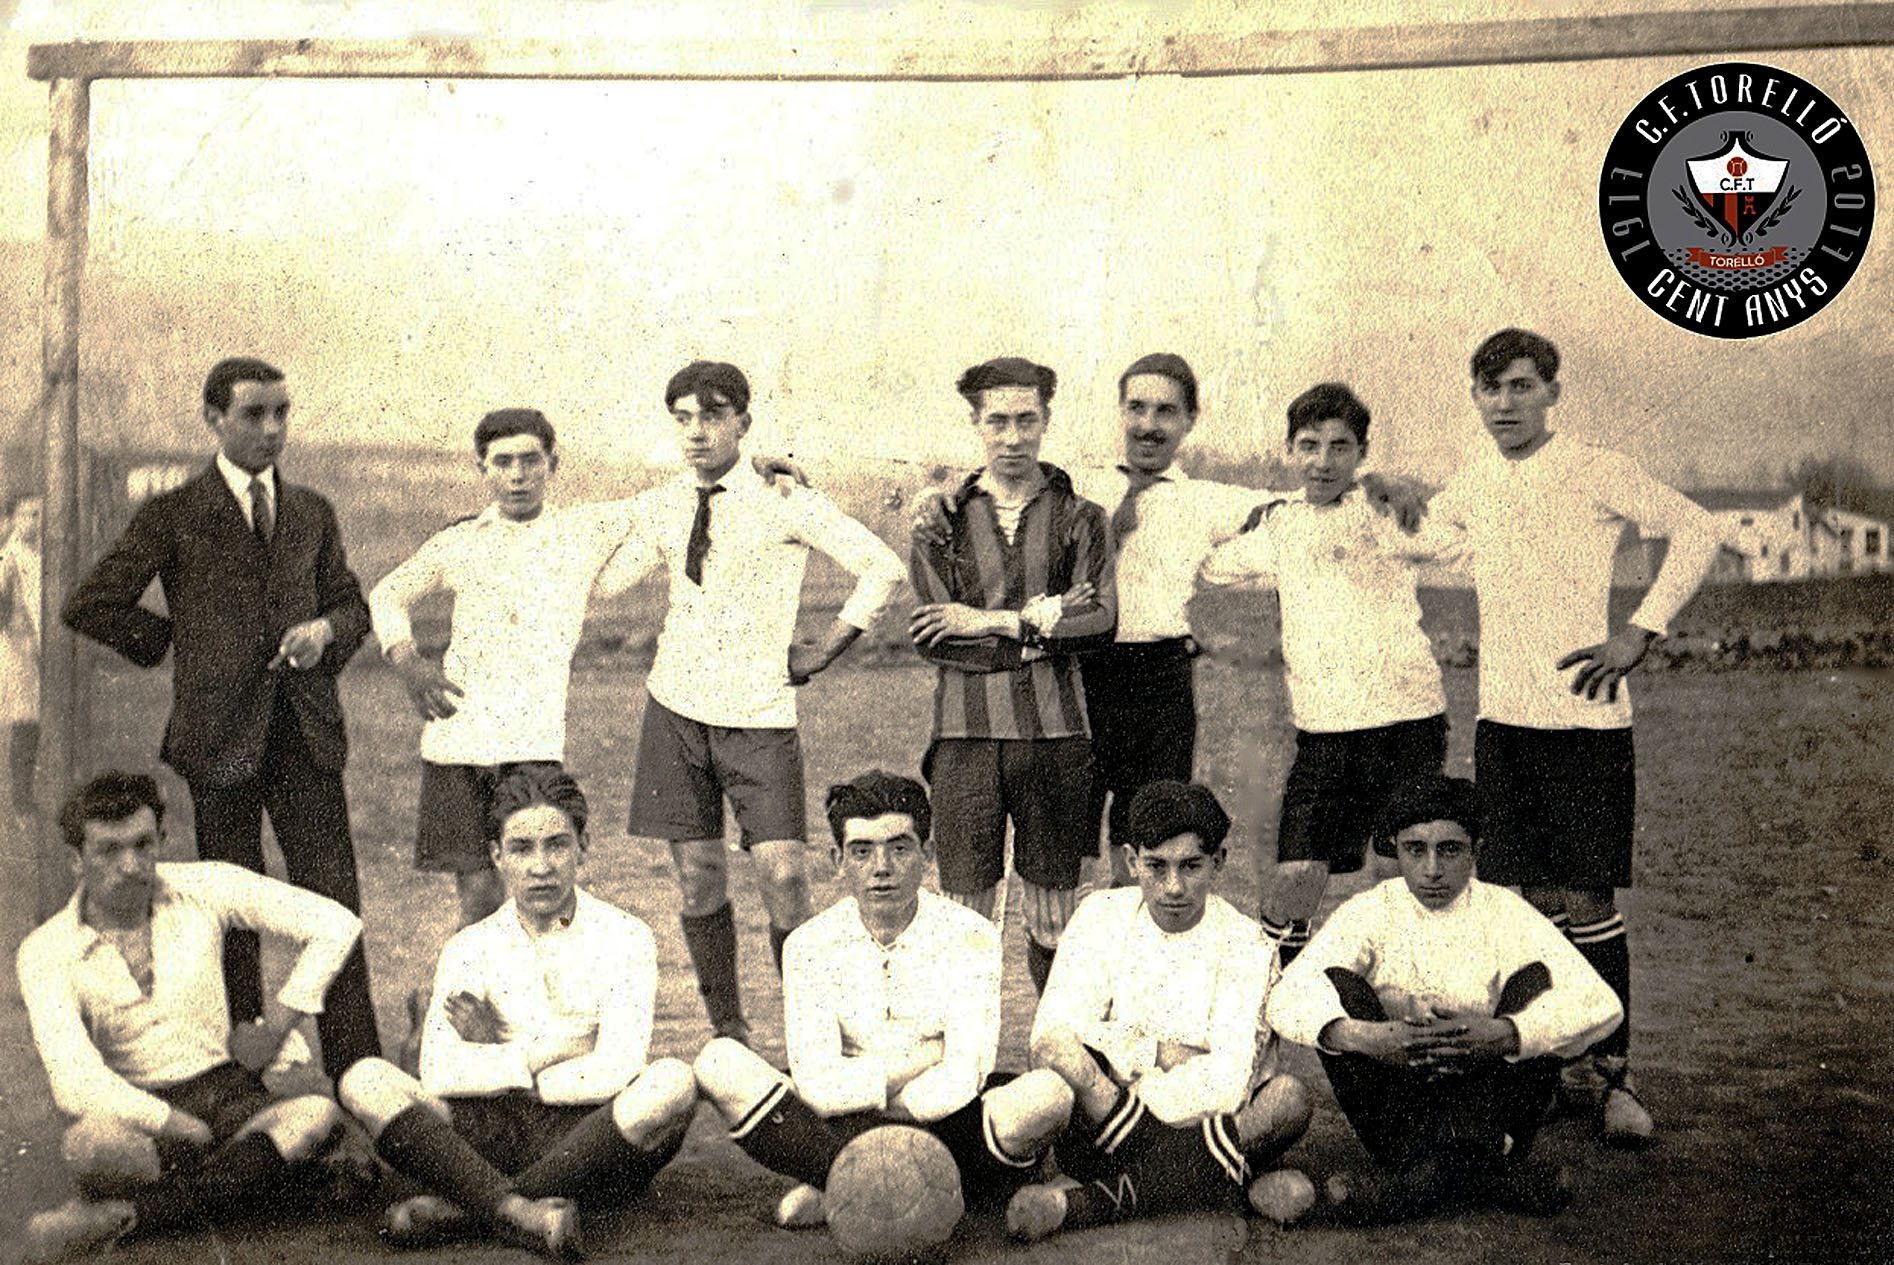 La primera alineació del Club Futbol Torelló, que ara compleix un segle, l’any de la seva fundació, el 1917. A la foto, d’esquerra a dreta, Alemany (primer àrbitre), Esturi, Soler, Sidera, Antoja, Vila, Valls, Celestí, Serra, Vilardell, Romeu i Casellas